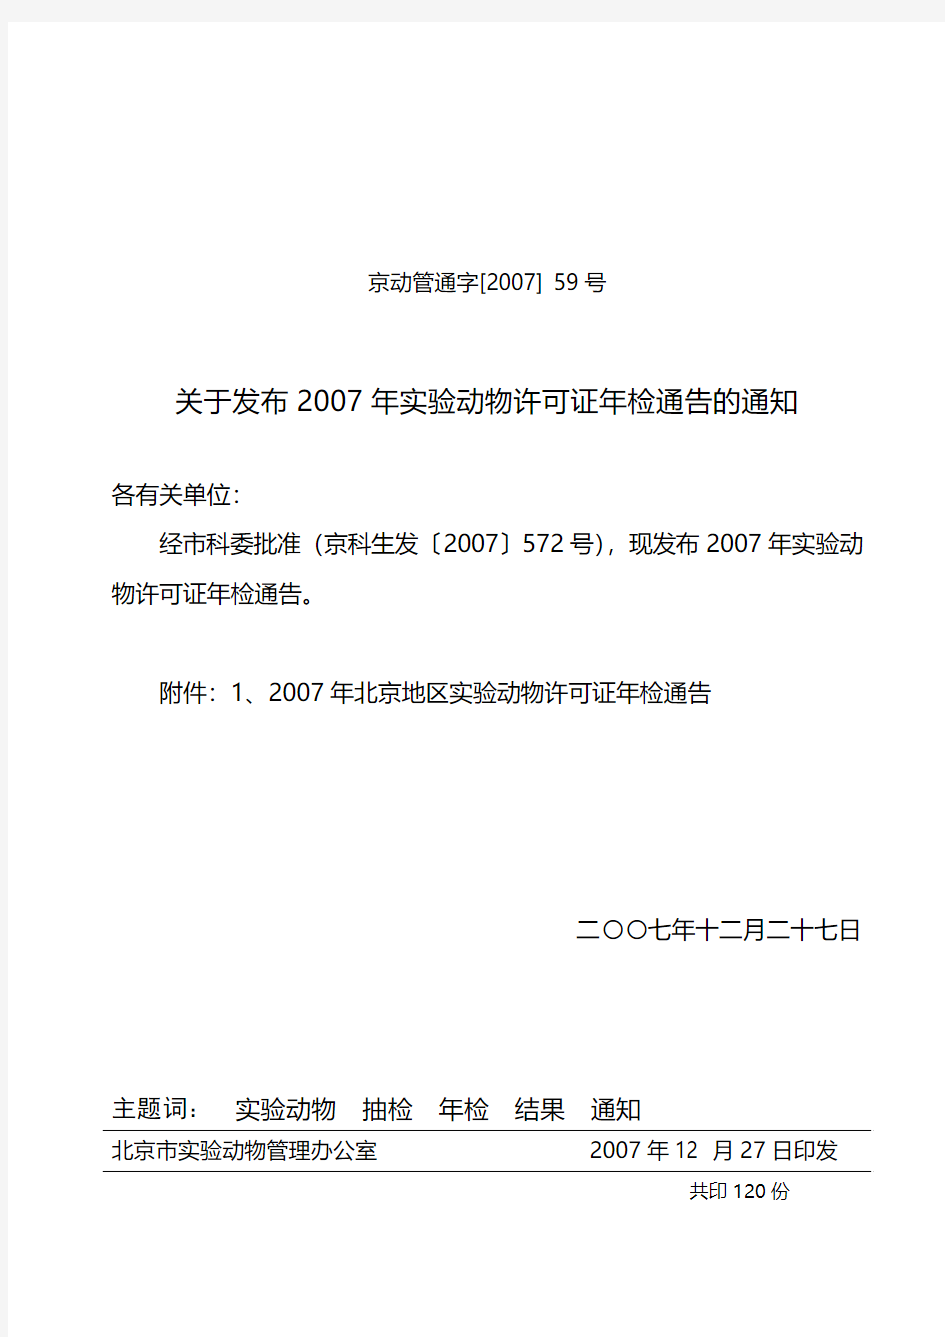 北京动物管理办公室文件-北京科学技术委员会